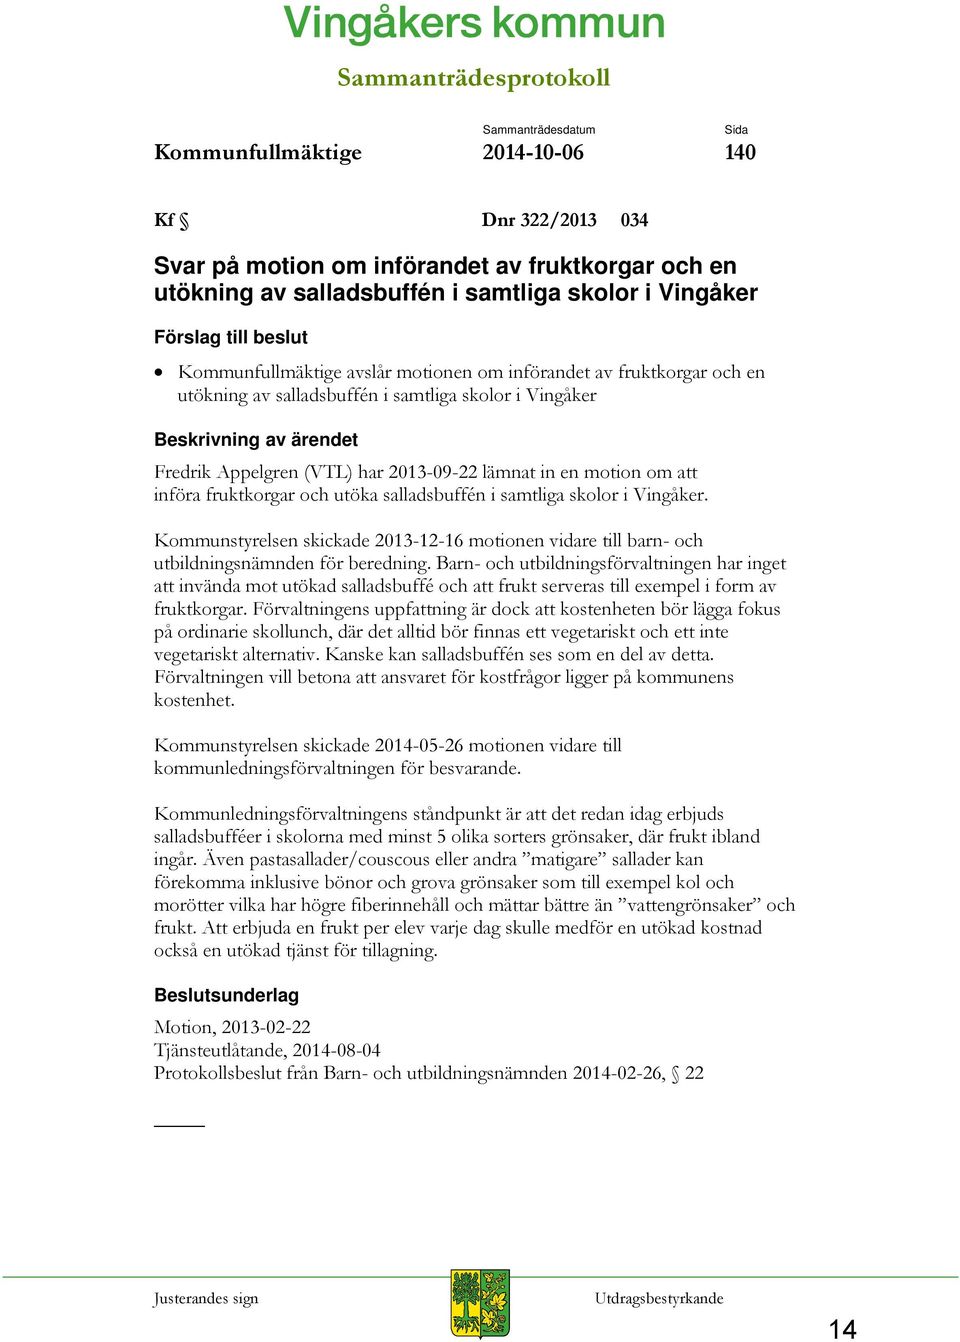 (VTL) har 2013-09-22 lämnat in en motion om att införa fruktkorgar och utöka salladsbuffén i samtliga skolor i Vingåker.